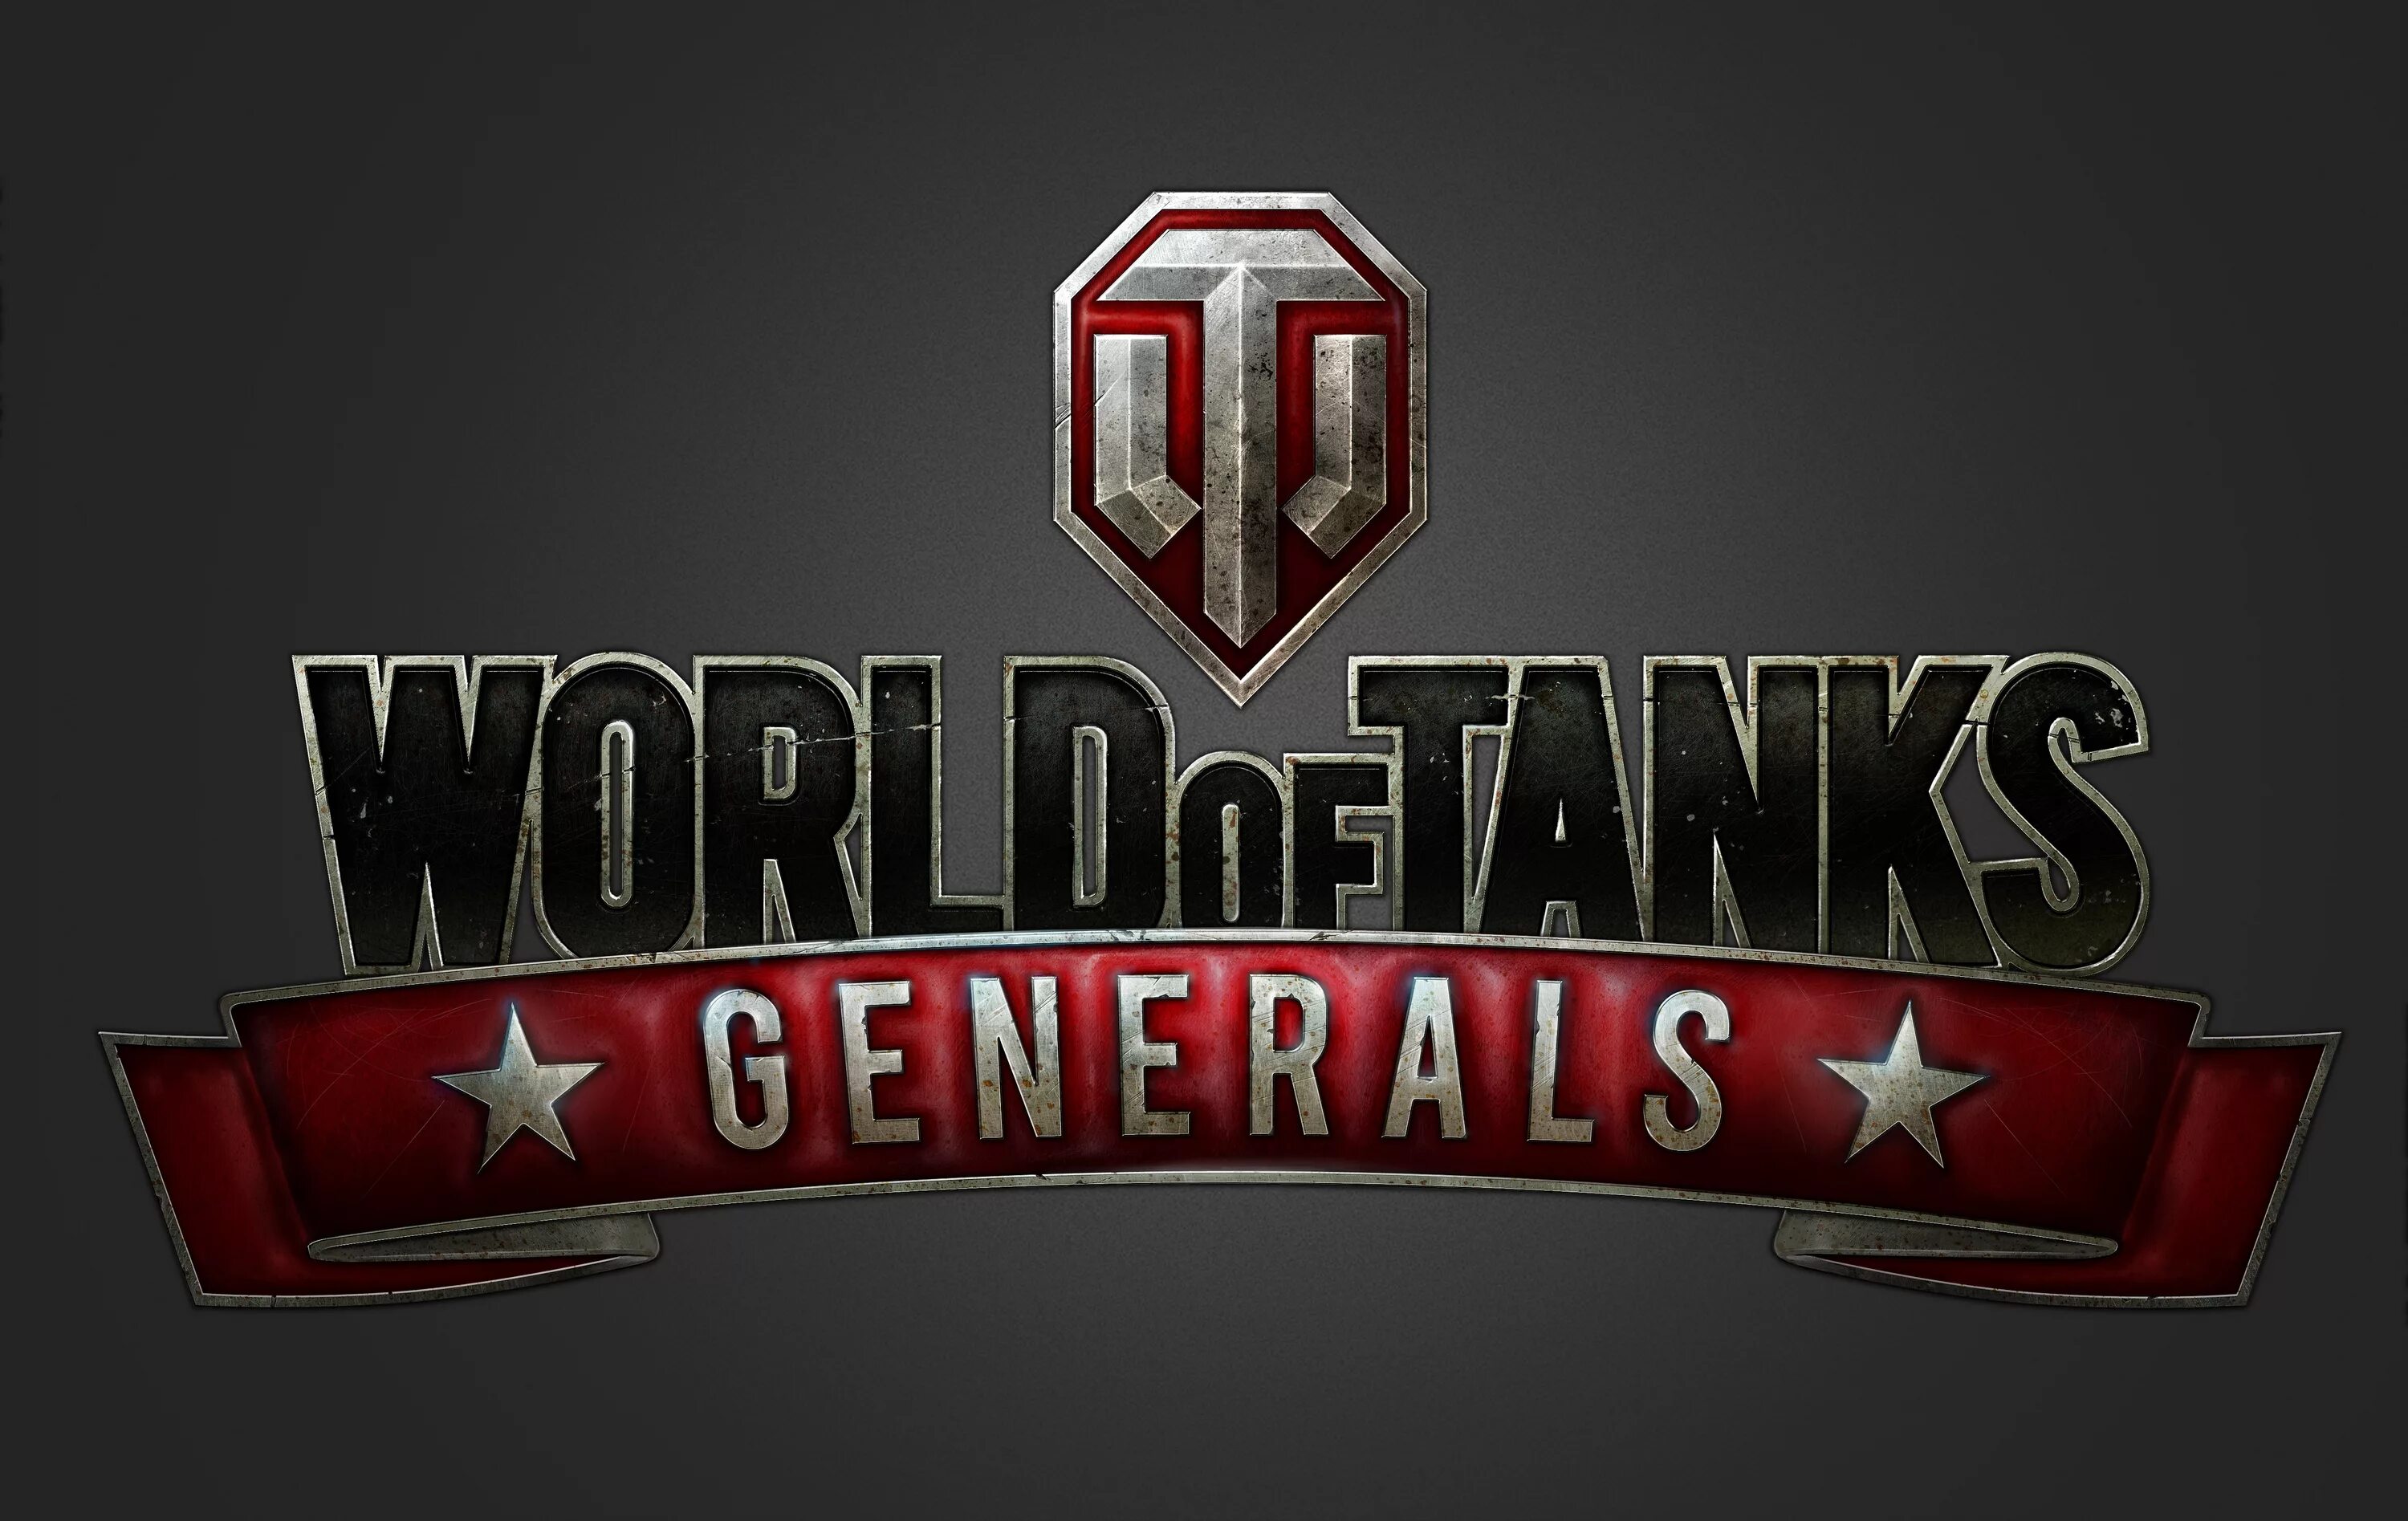 General tanks. World of Tanks. WOT логотип. WOT Generals. Игра танки логотип.